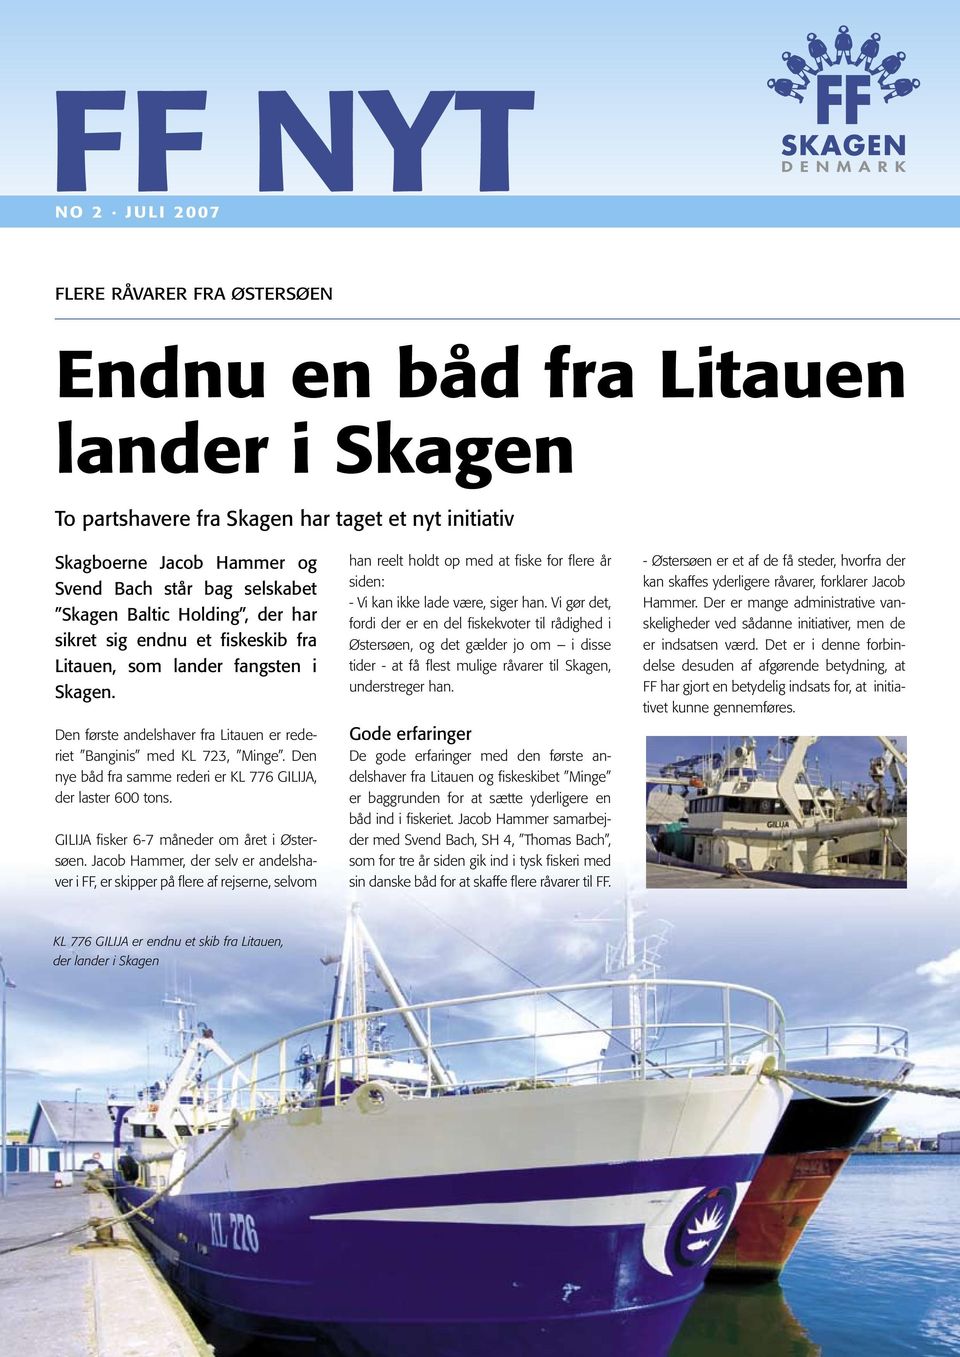 Den nye båd fra samme rederi er KL 776 GILIJA, der laster 600 tons. GILIJA fisker 6-7 måneder om året i Østersøen.